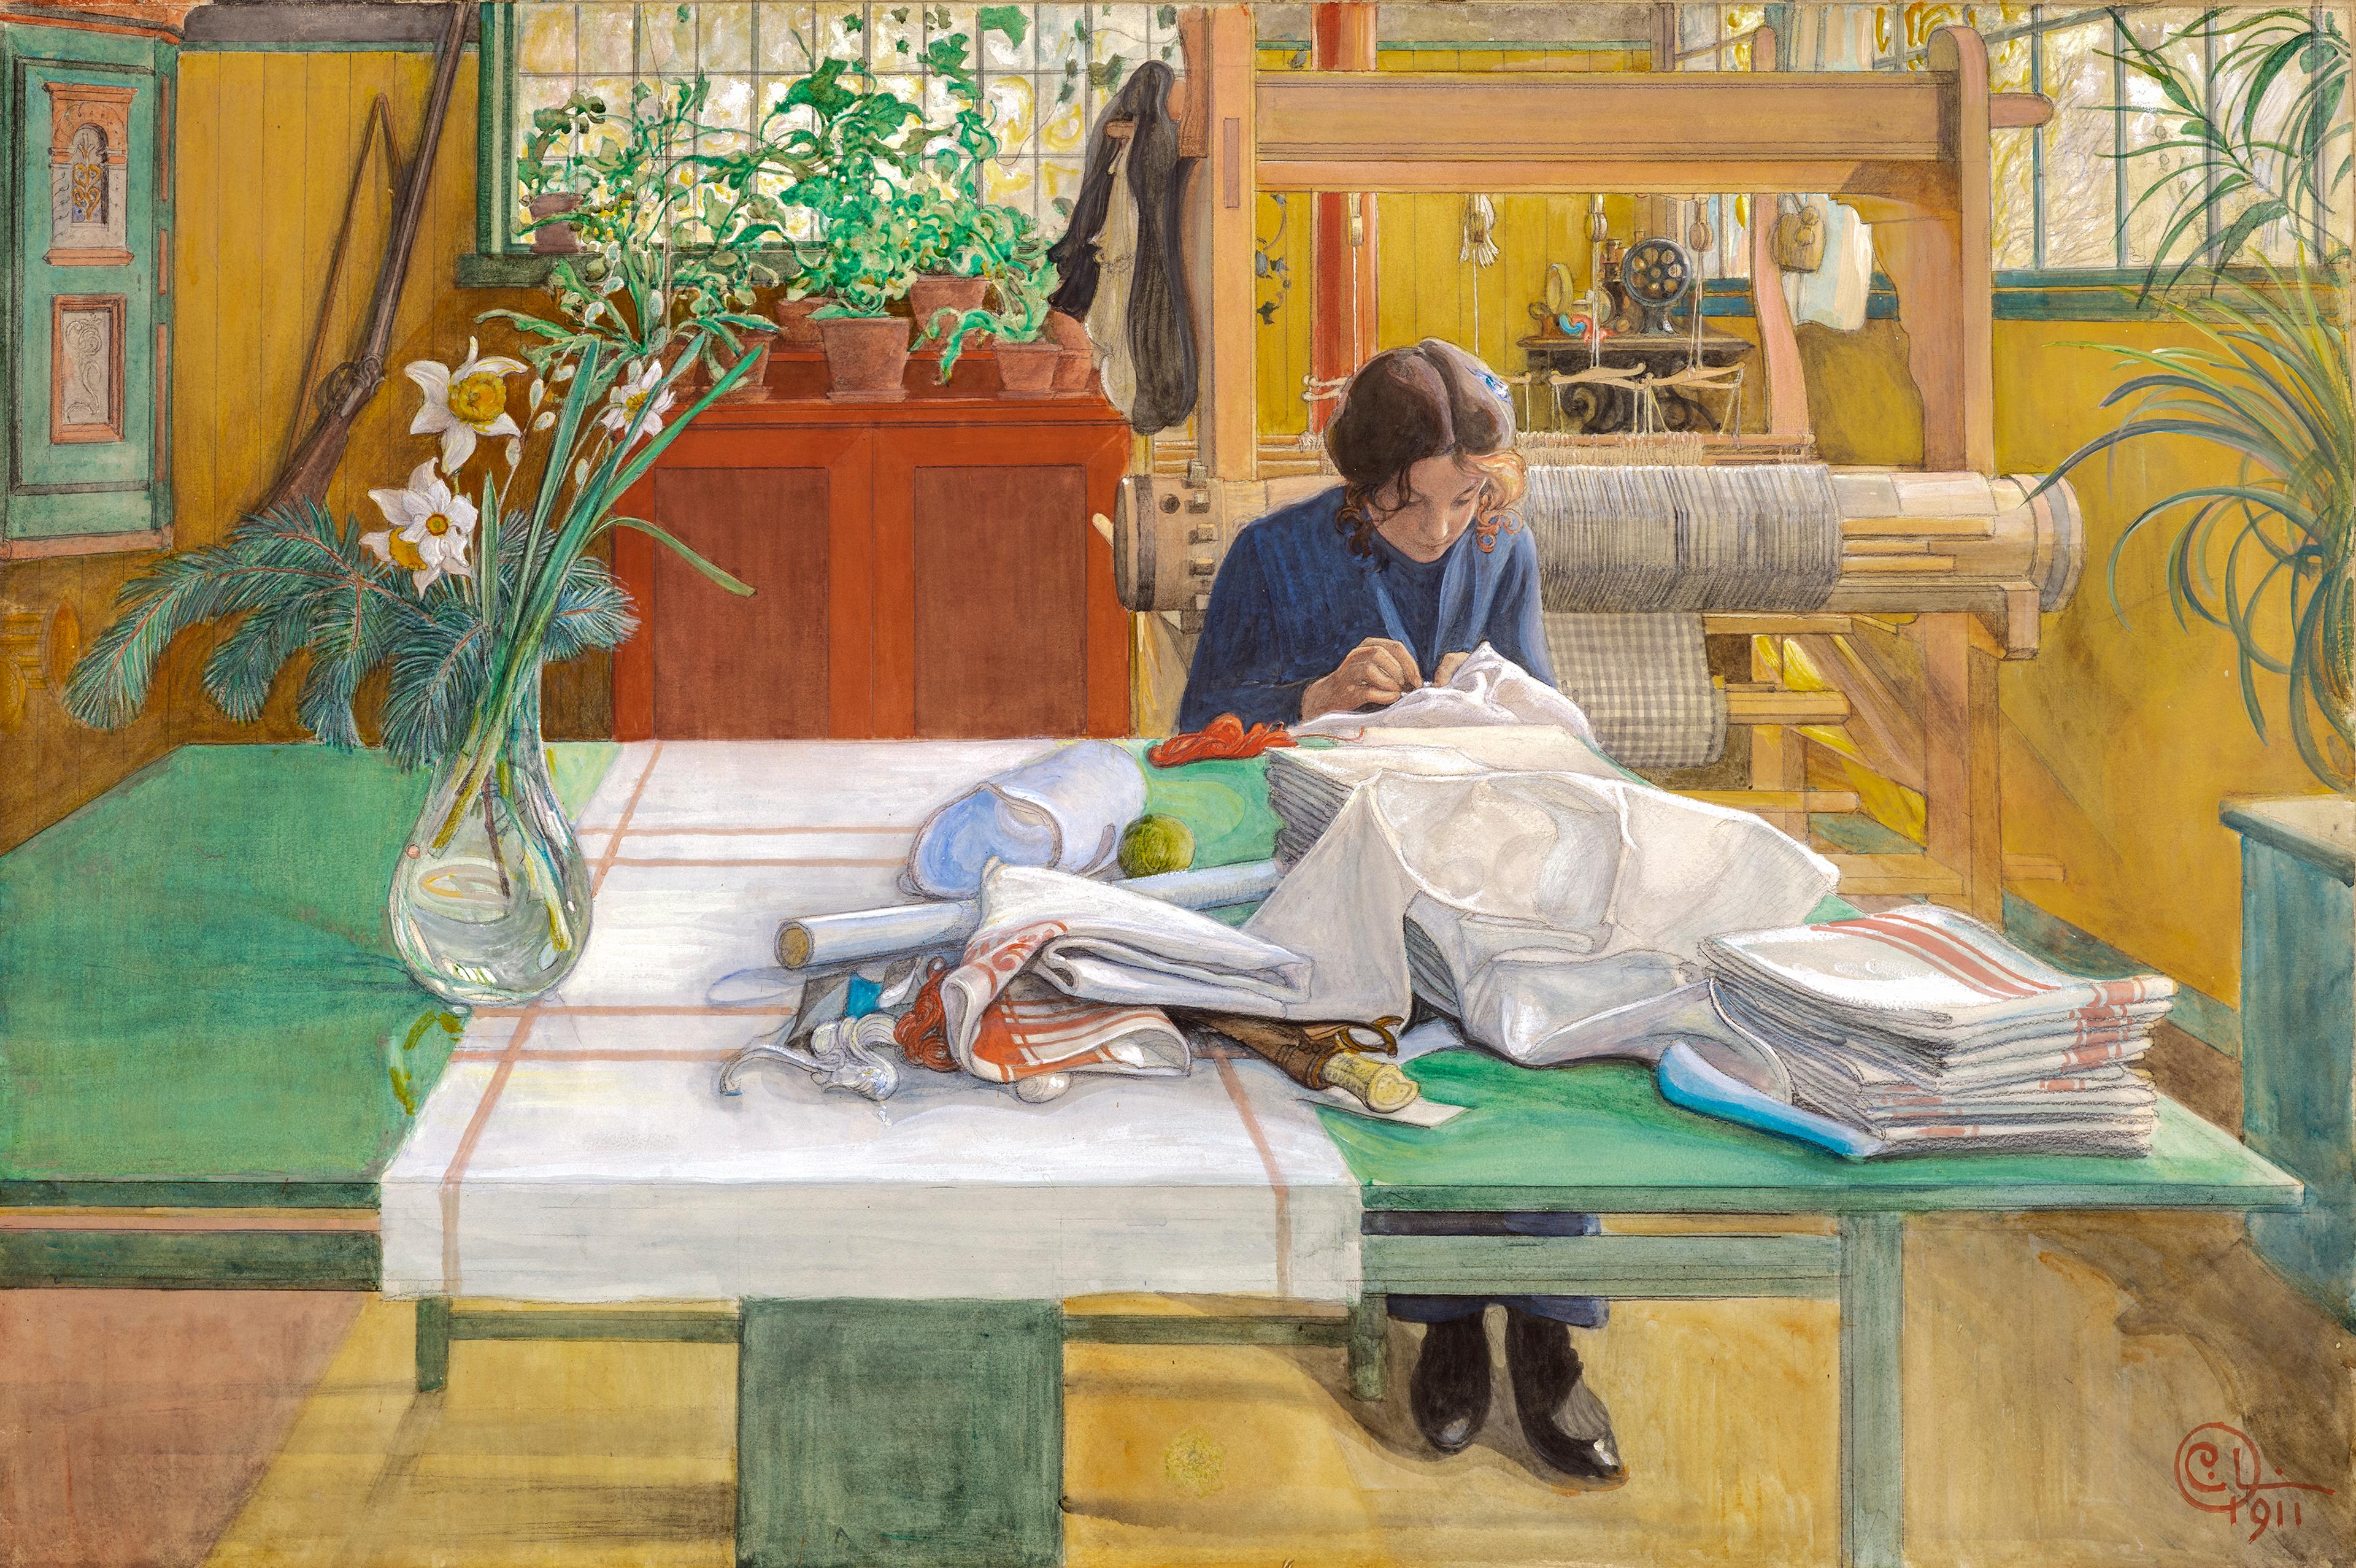 Maleri fra utstillingen Brikker malt av Carl Larsson. Vi ser en kvinne som sitter med et bord og syr i et hyggelig innredet rom med planter og tremøbler i klare farger.  